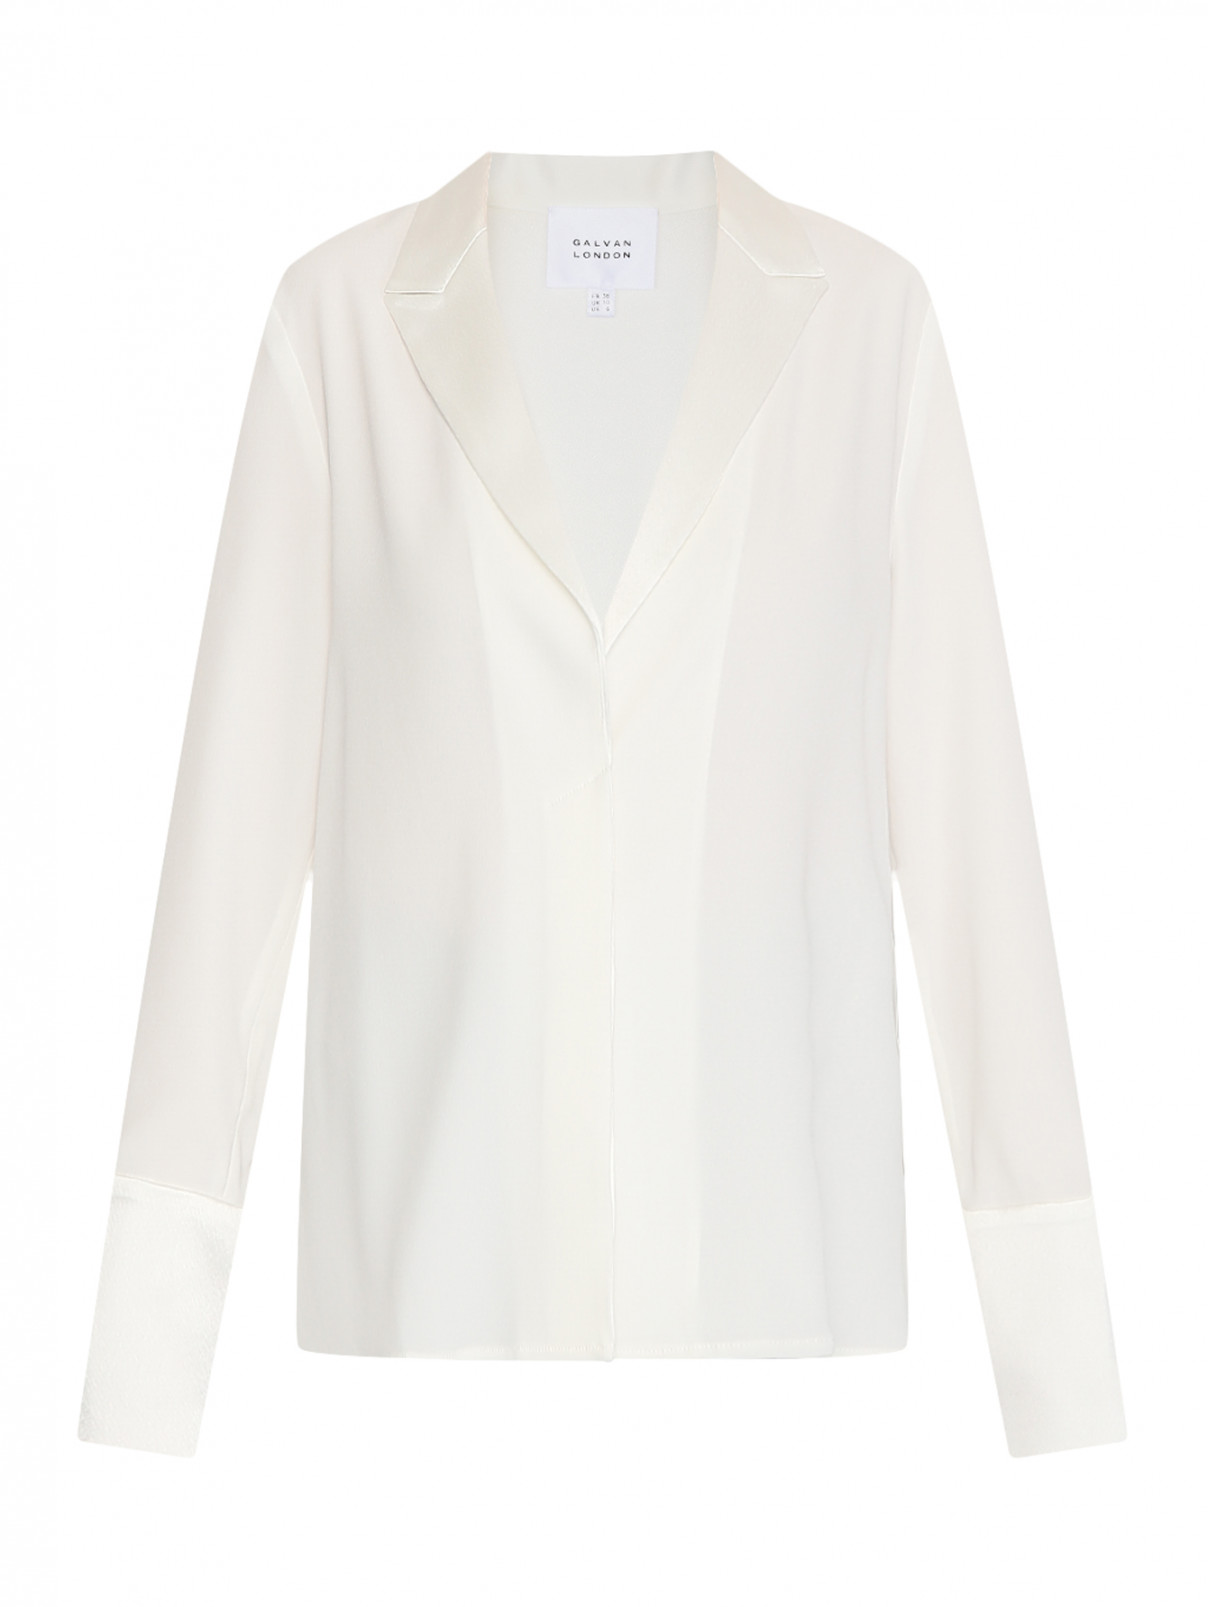 Блуза с манжетами Galvan London  –  Общий вид  – Цвет:  Белый